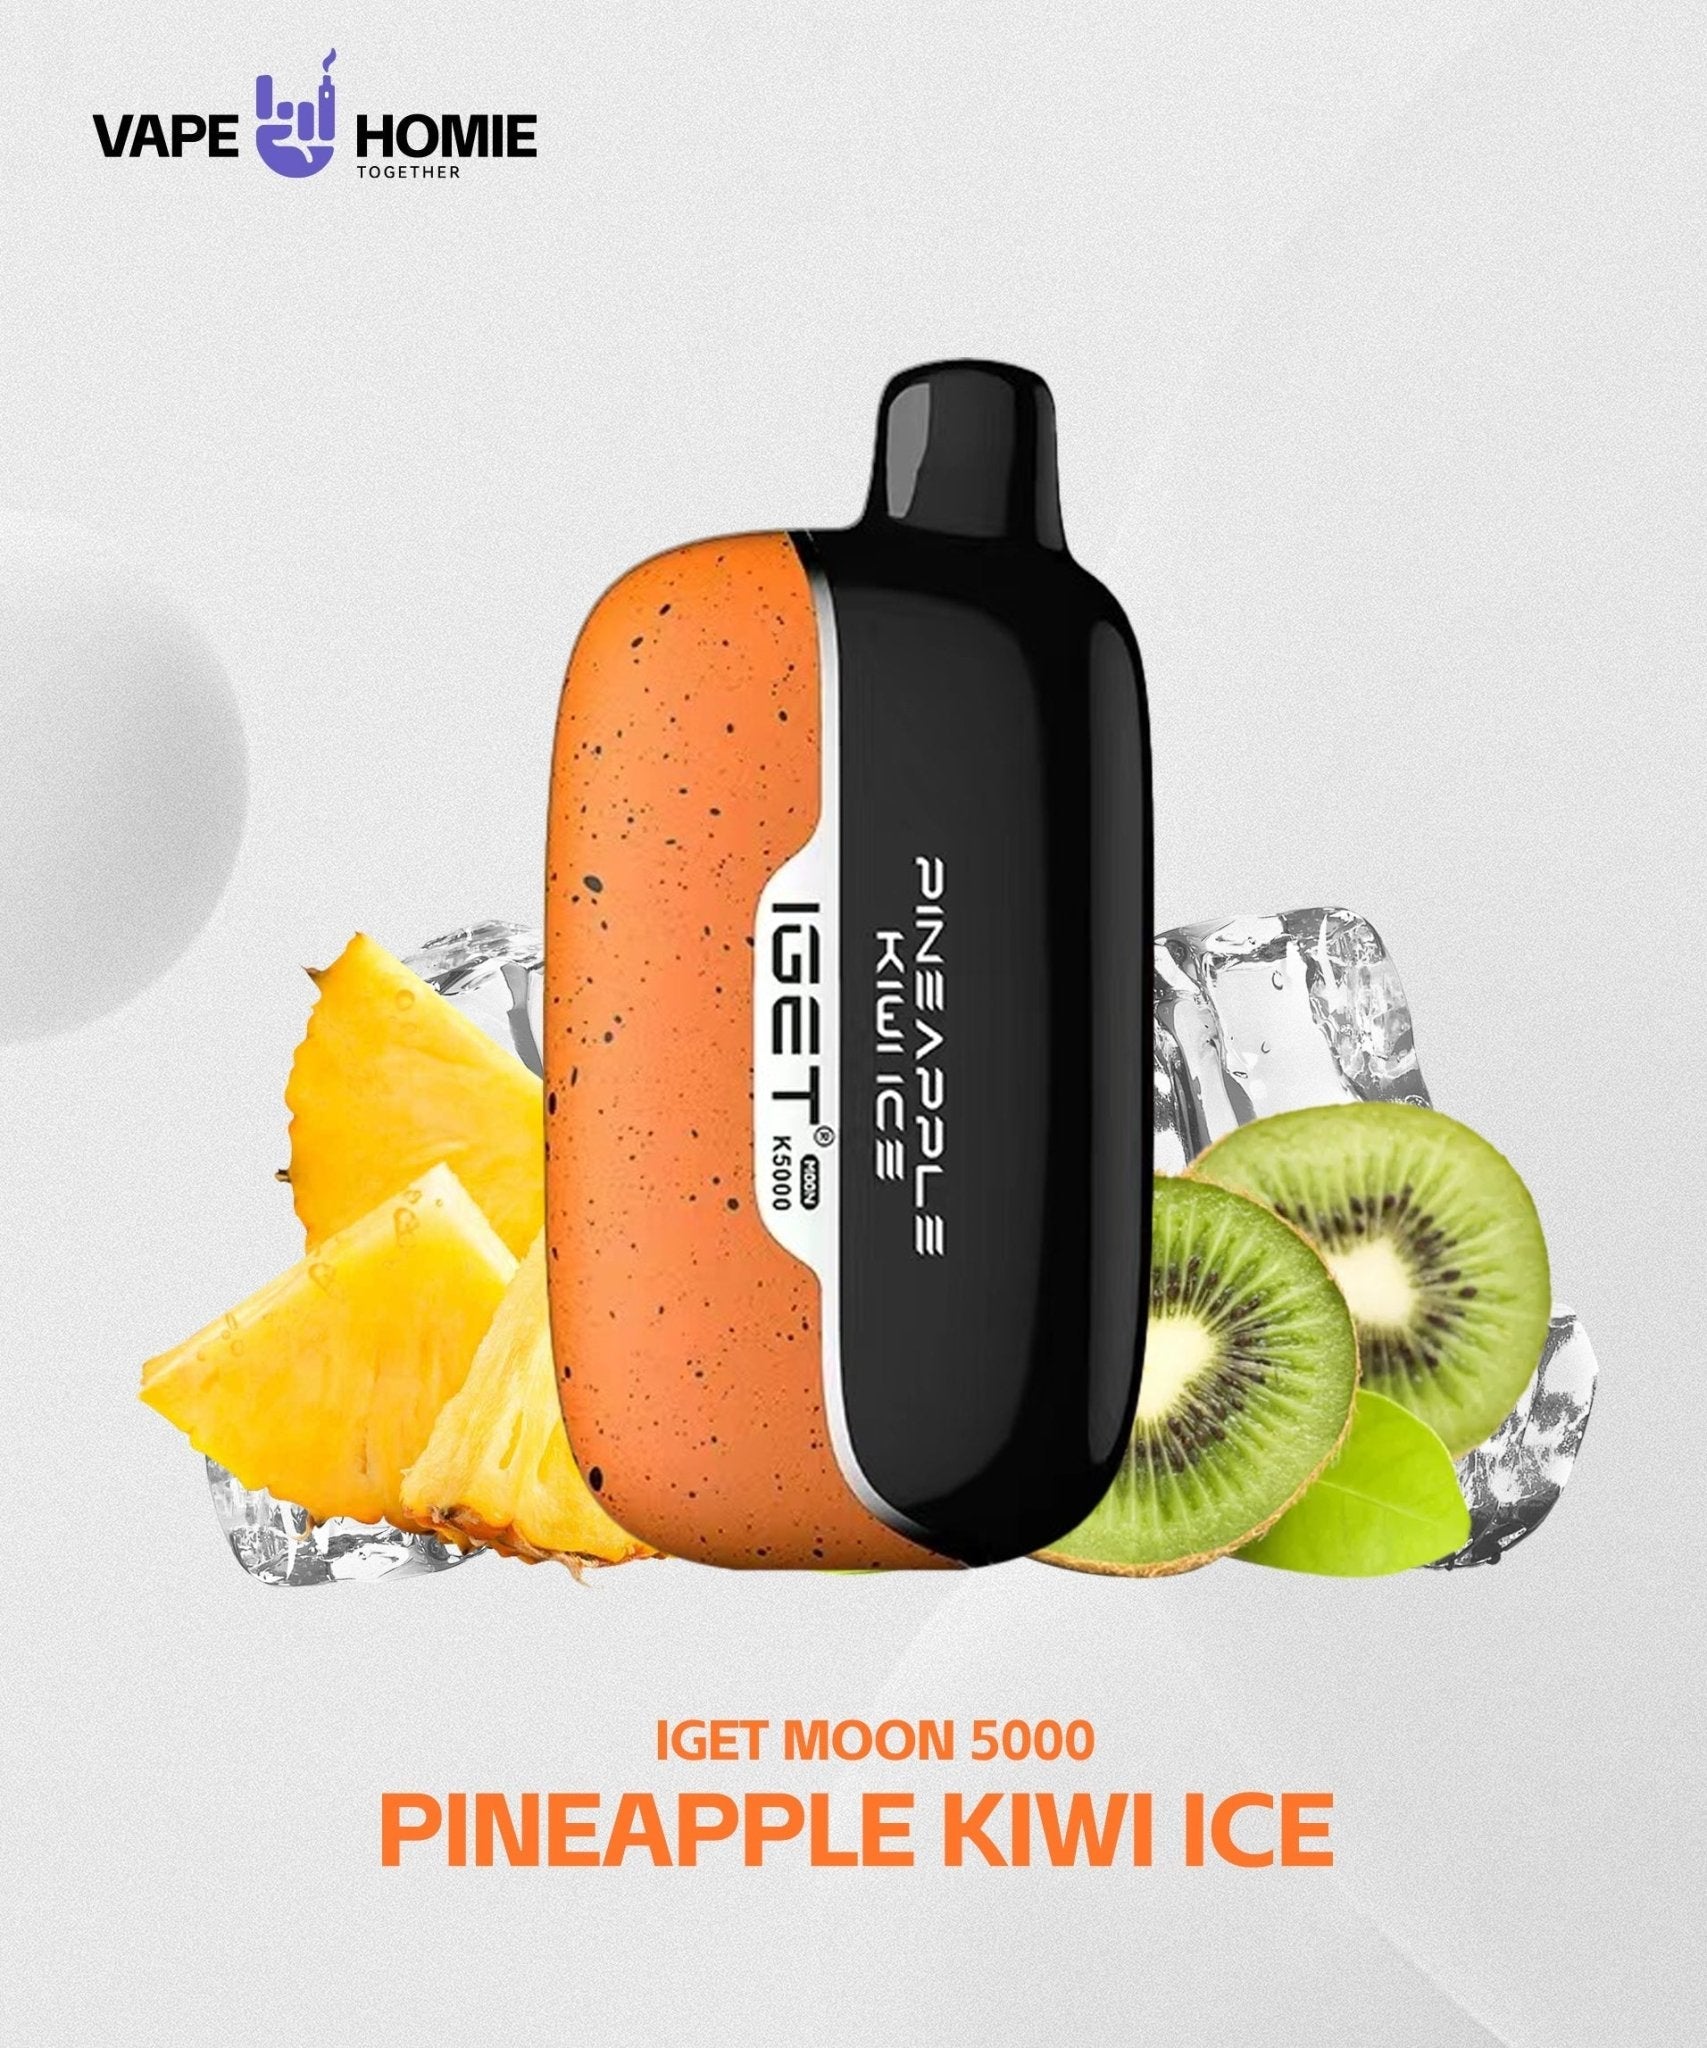 IGET MOON K5000 - PINEAPPLE KIWI ICE - HAPPYTRAIL